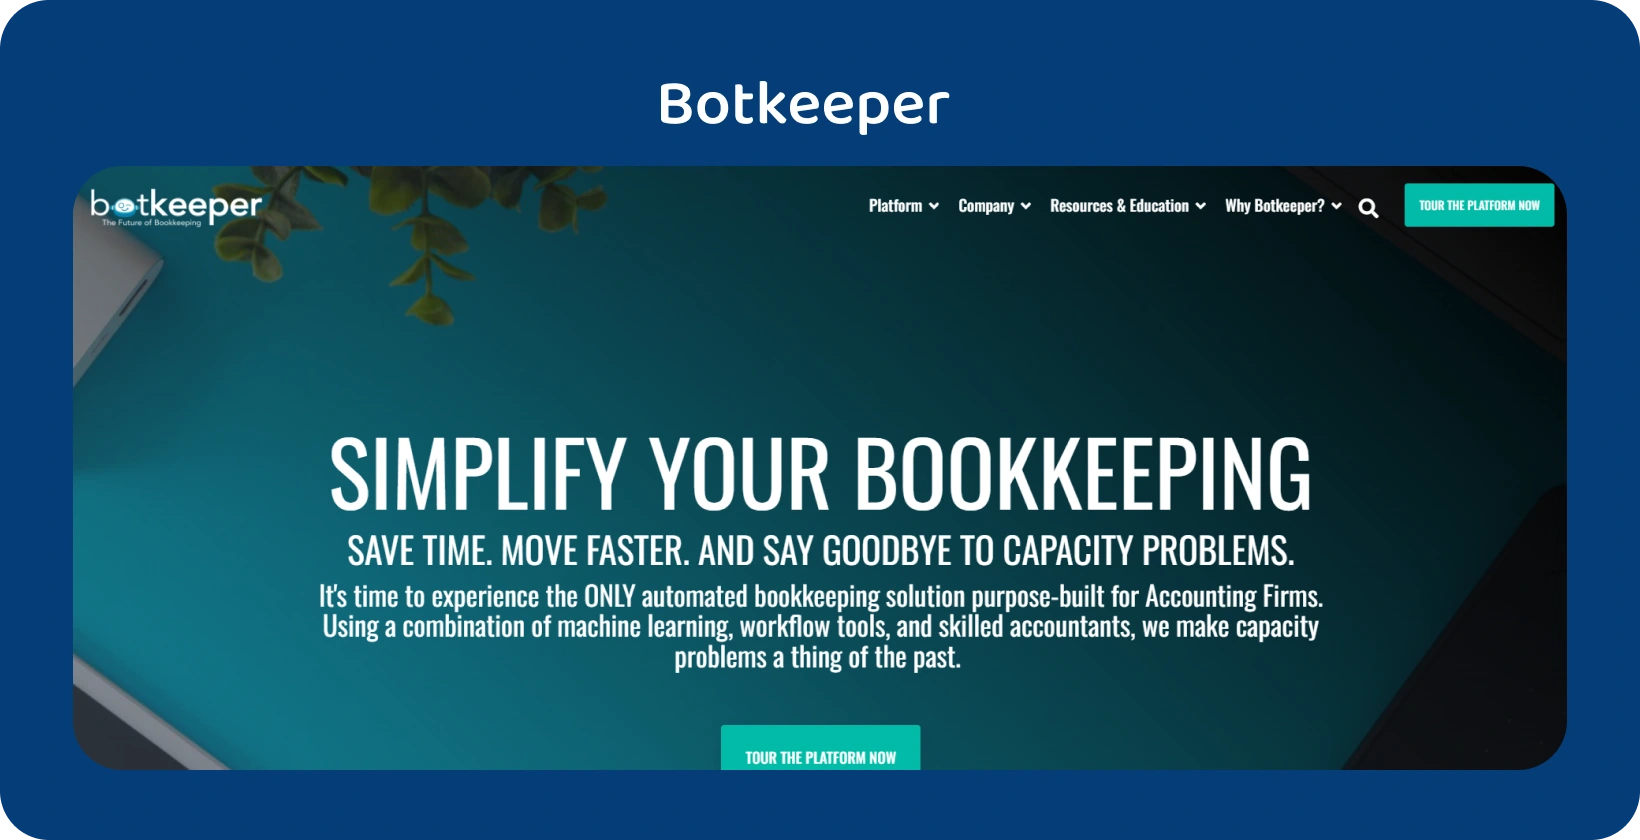 Domovská stránka spoločnosti Botkeeper zdôrazňuje zjednodušenie účtovníctva pre účtovníkov prostredníctvom svojej automatizačnej technológie.